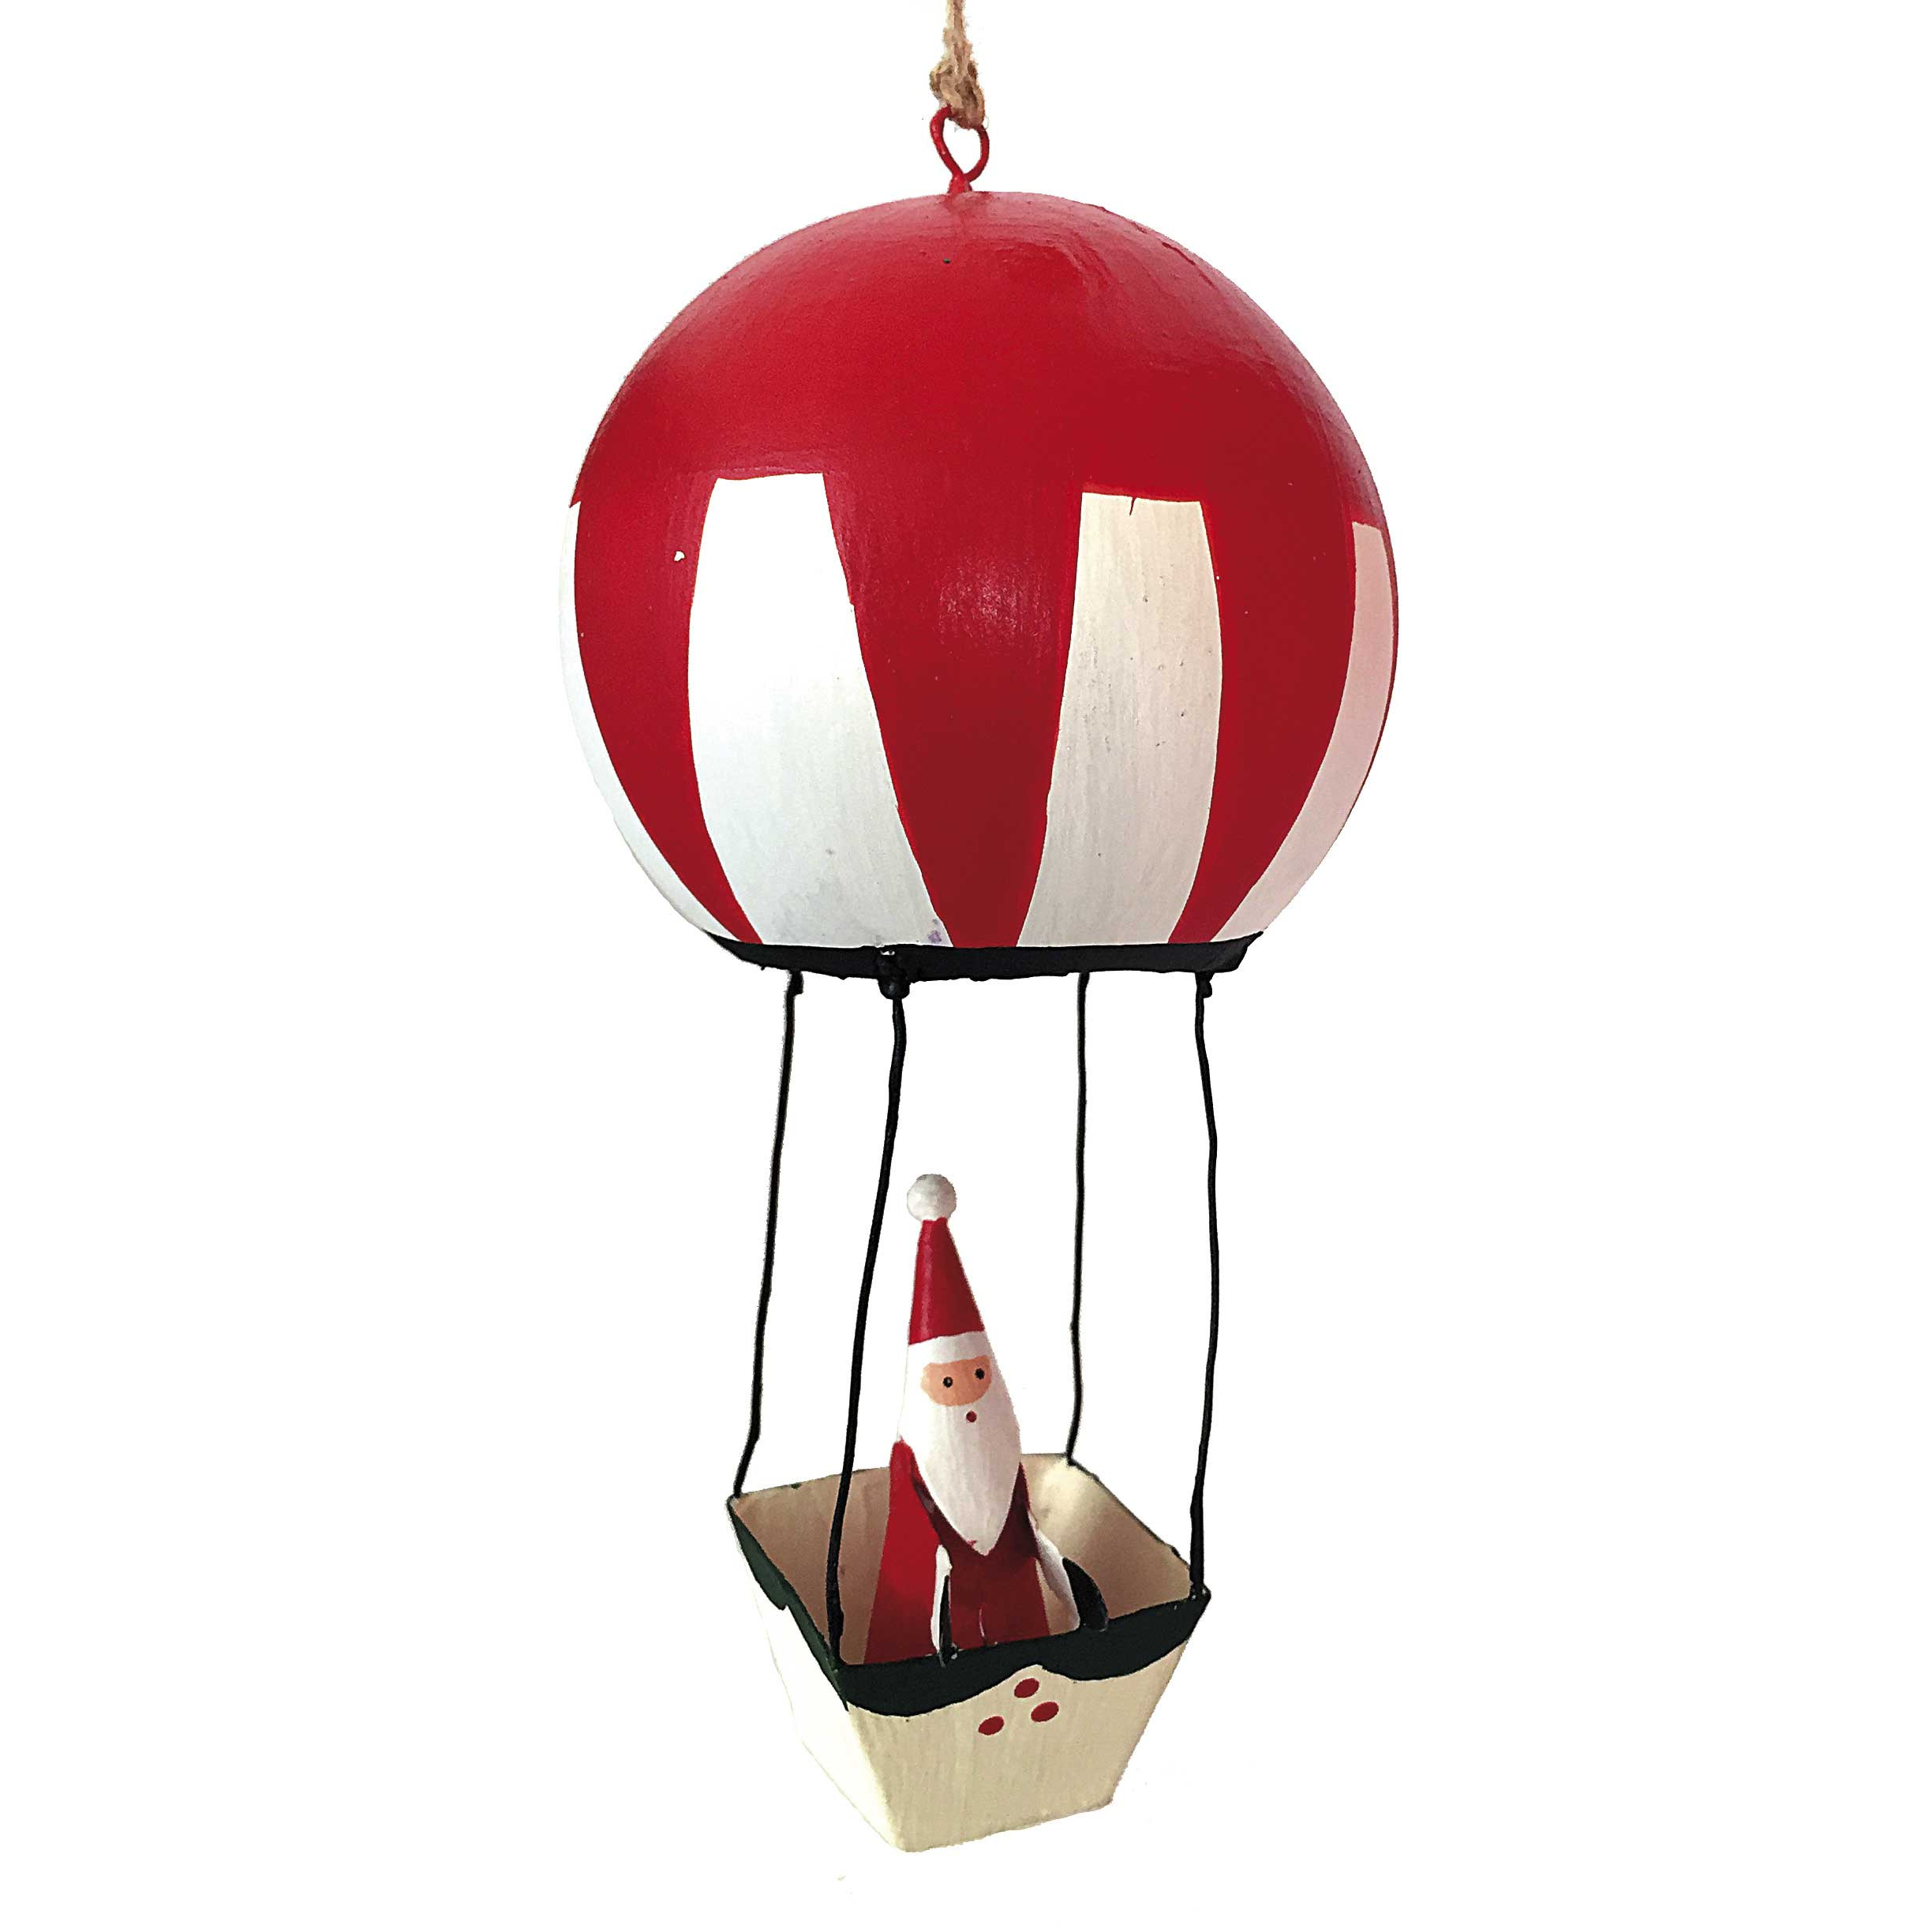 Julemand i rød luftballon